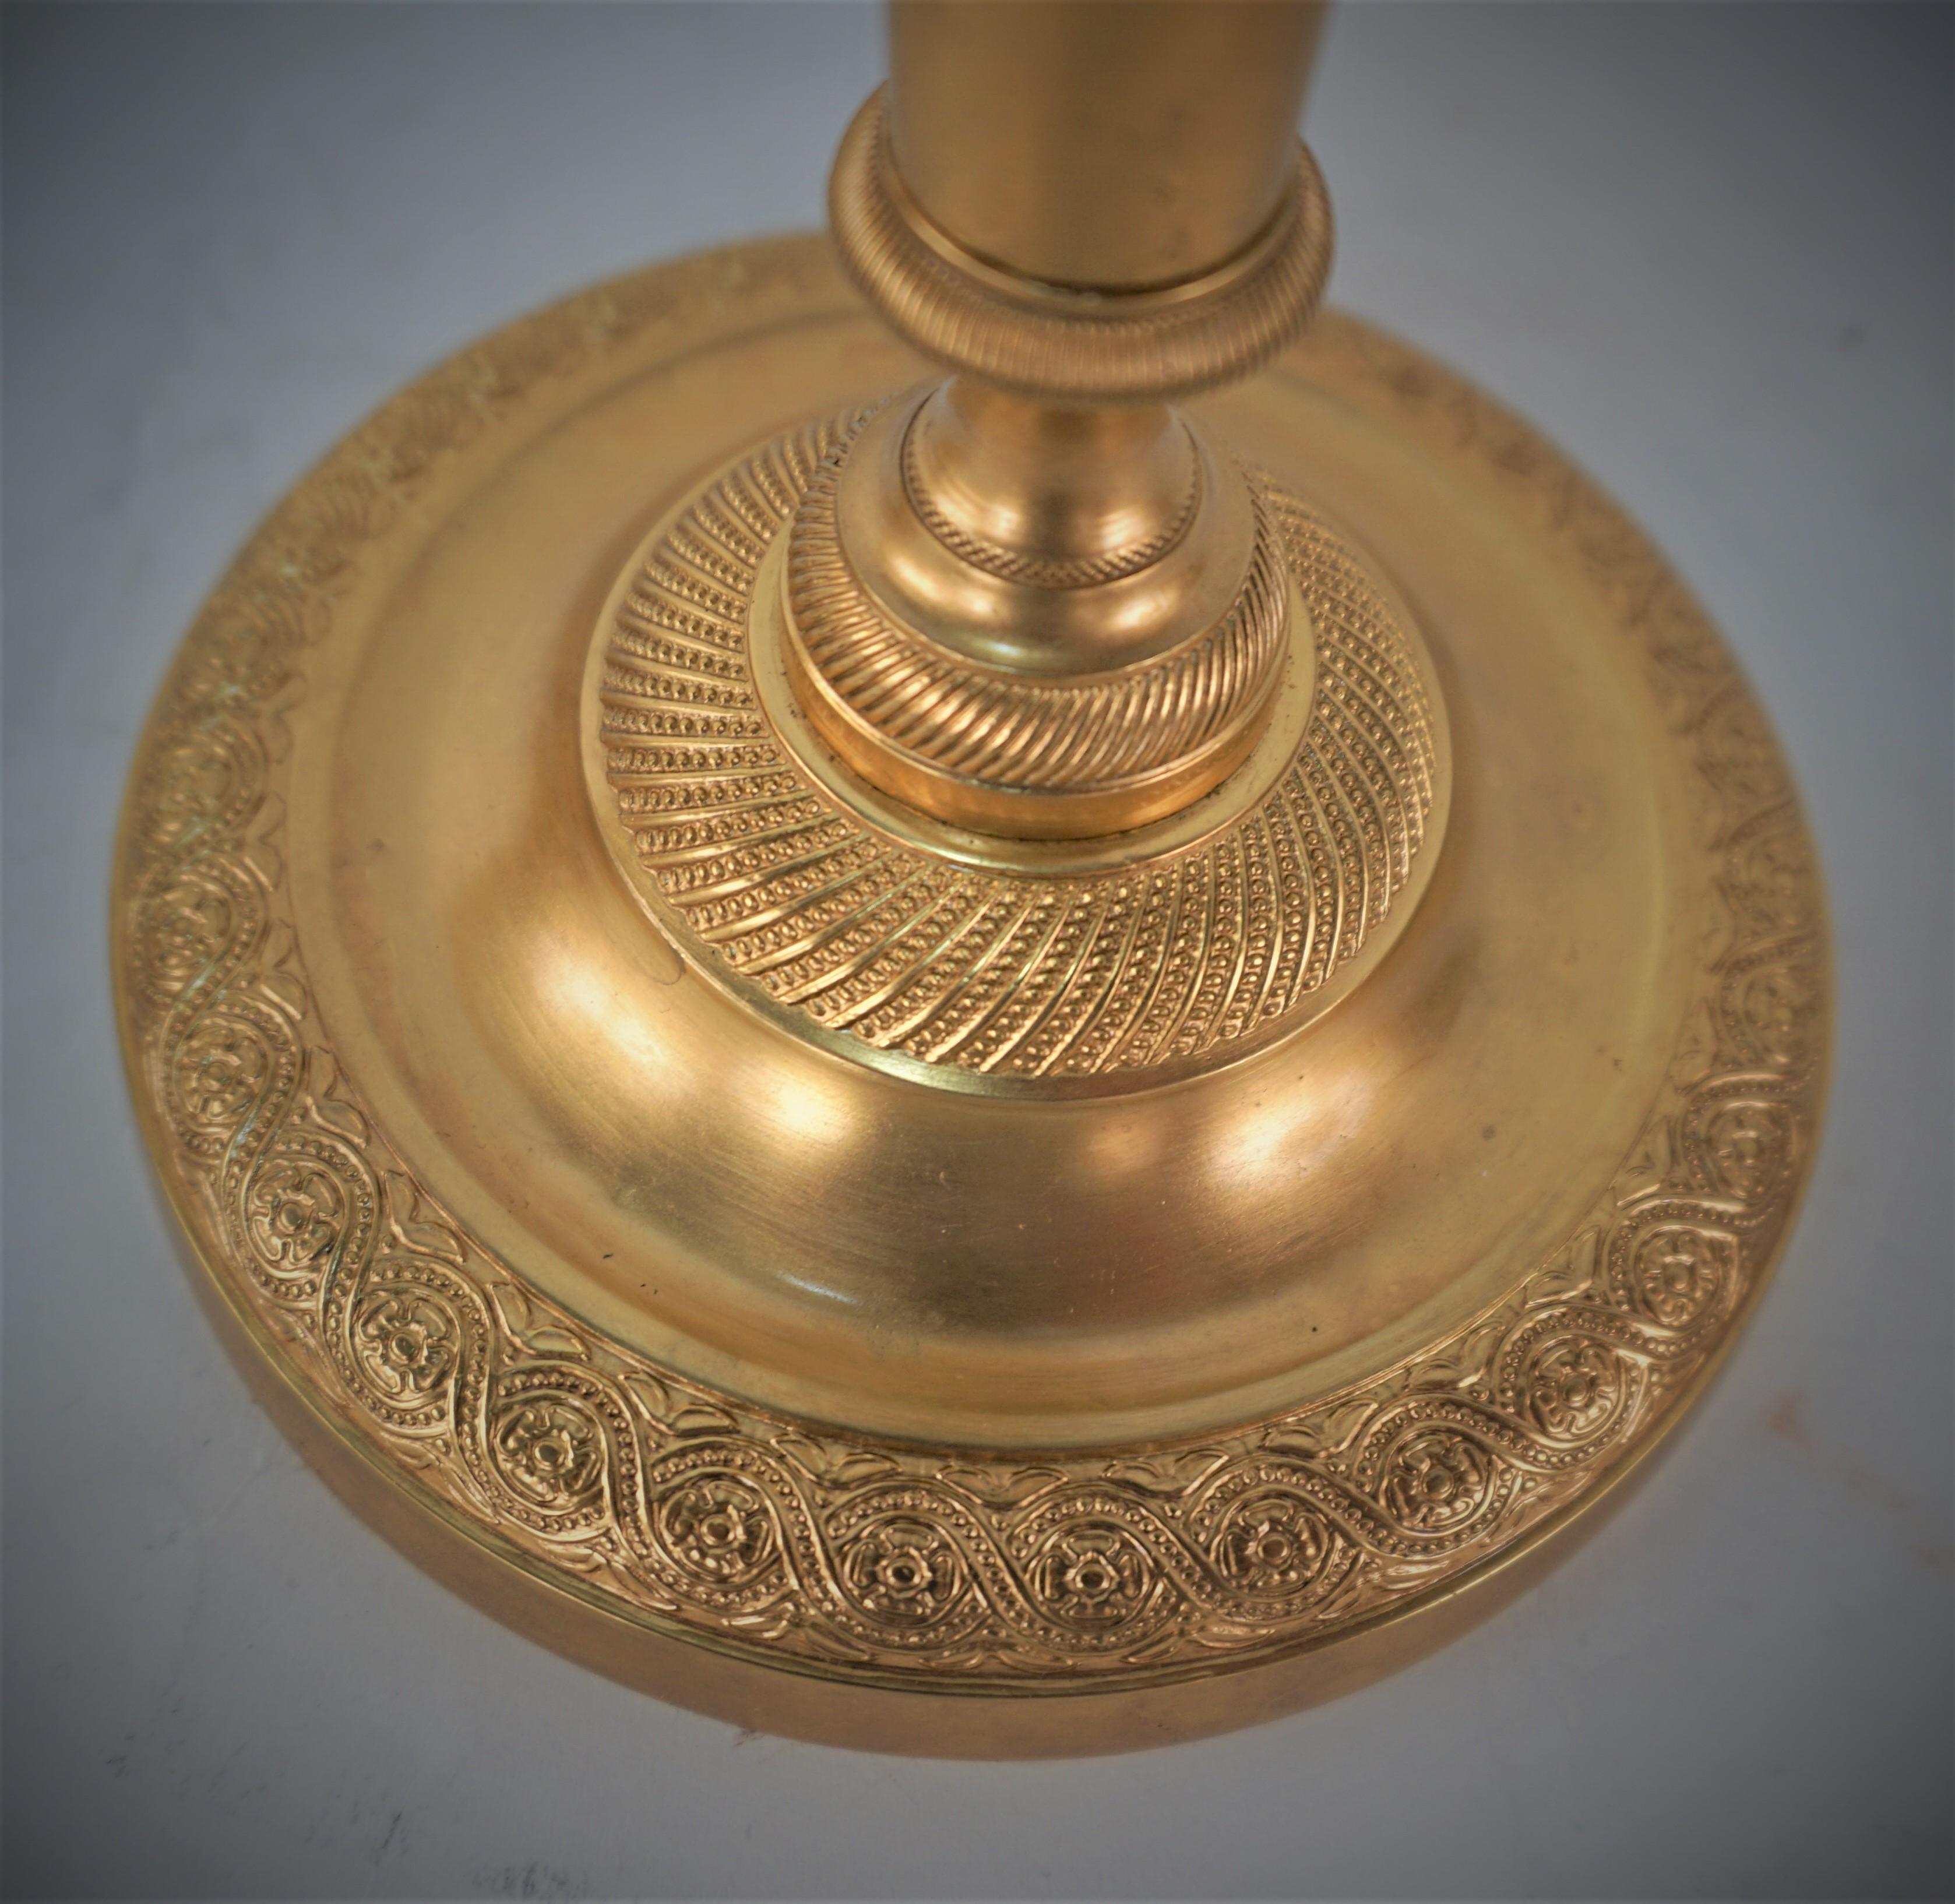 Paar vergoldete Bronze-Kerzenhalter im Empire-Stil des 19. Jahrhunderts mit außergewöhnlichem Detailguss.